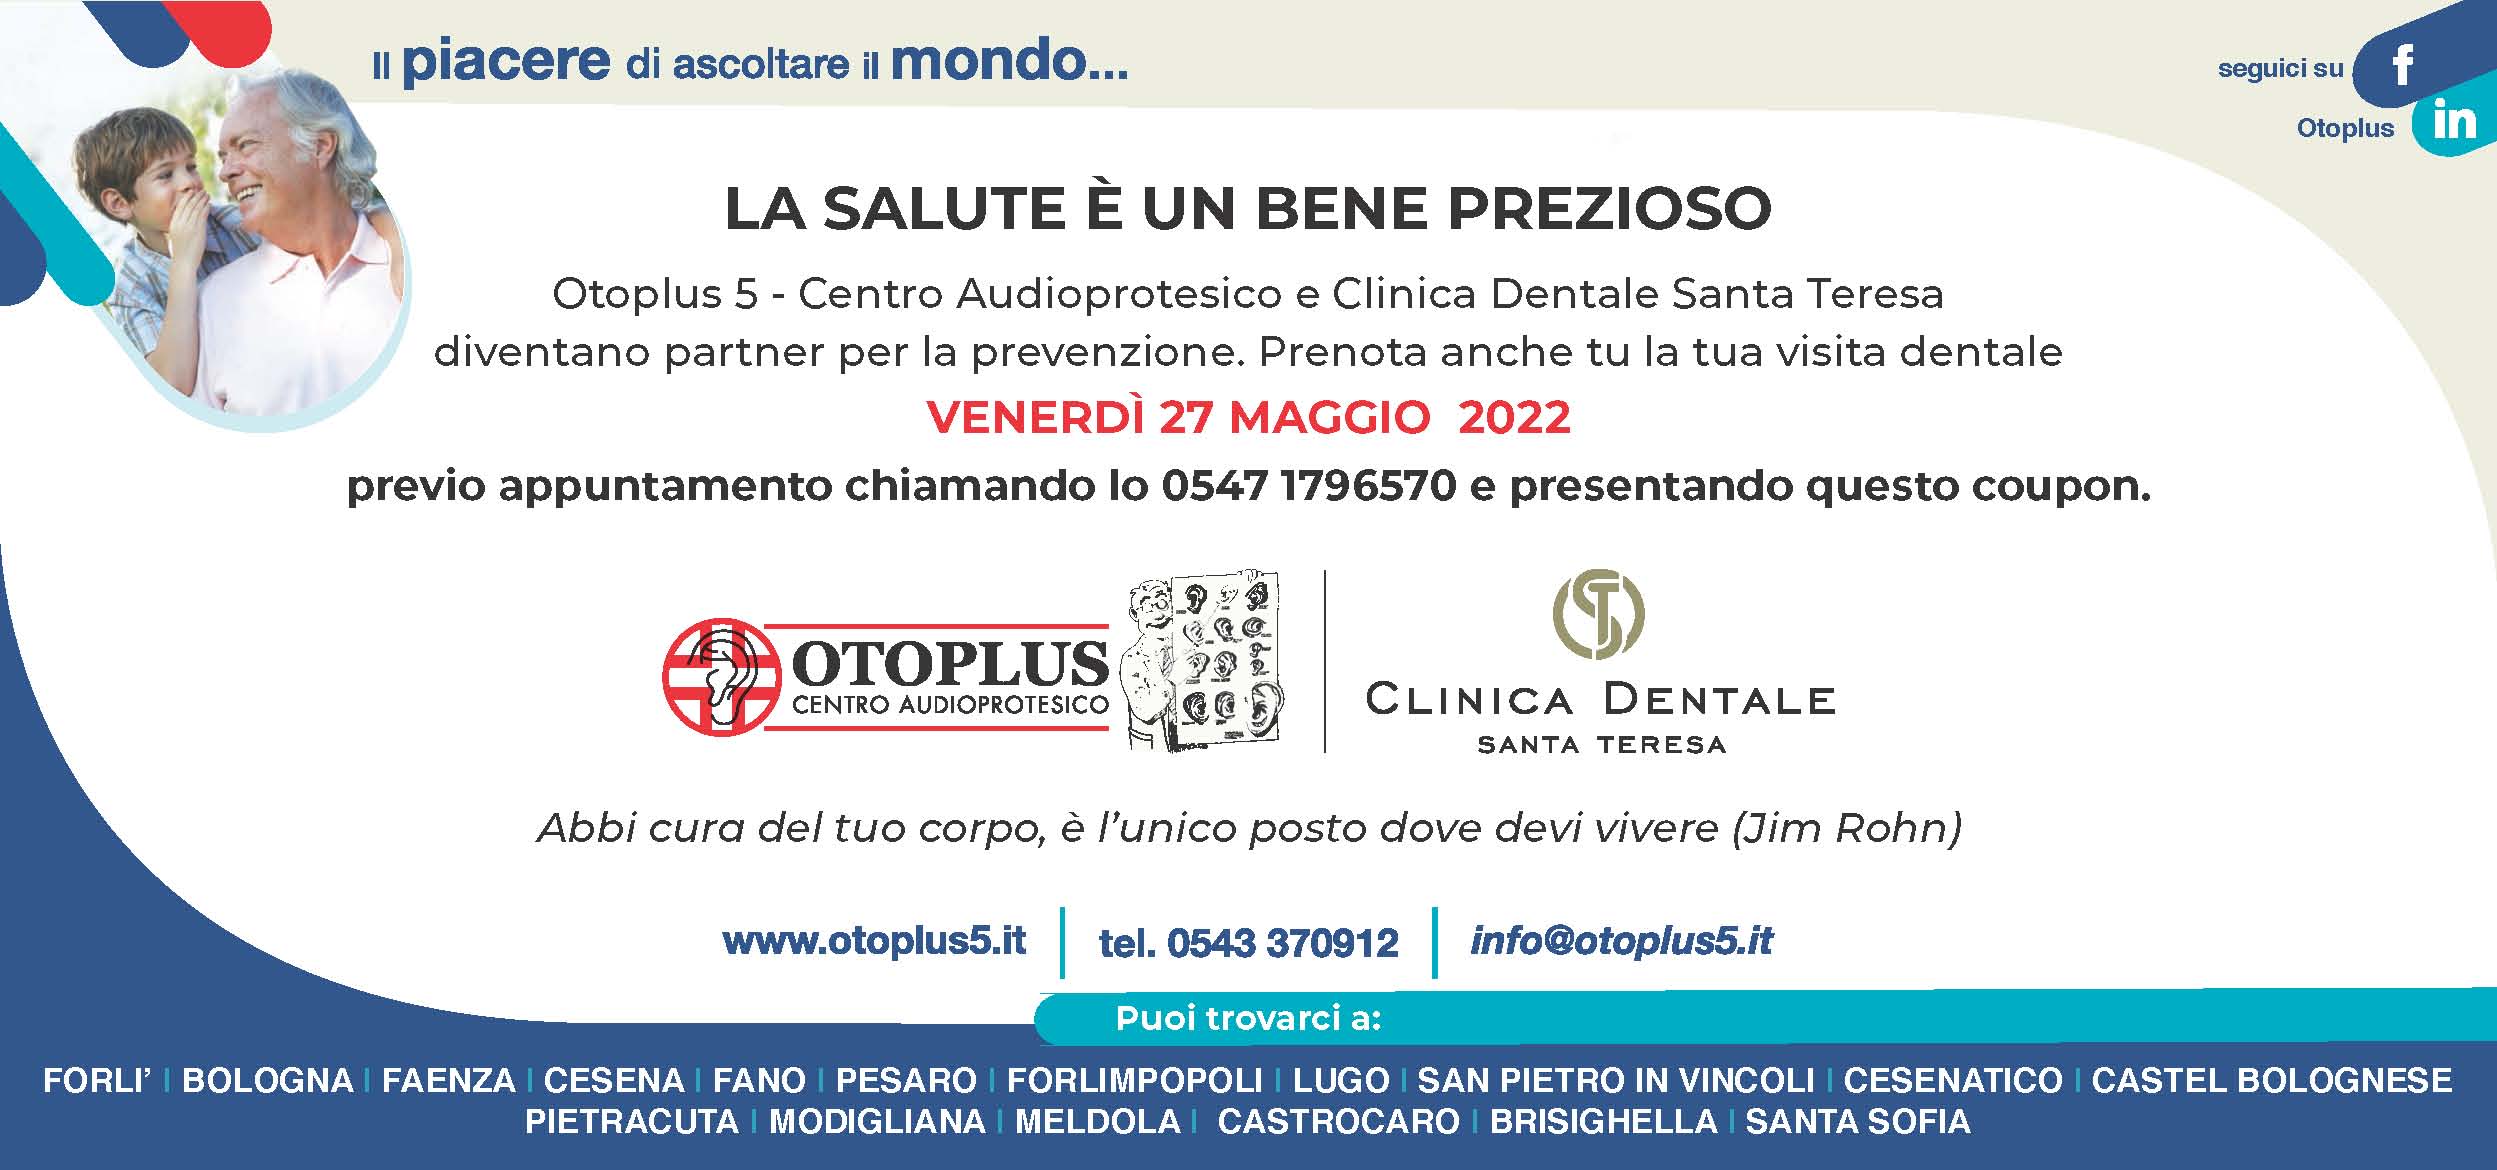 Venerd 27 maggio: Otoplus e Clinica Dentale Santa Teresa partner per la prevenzione